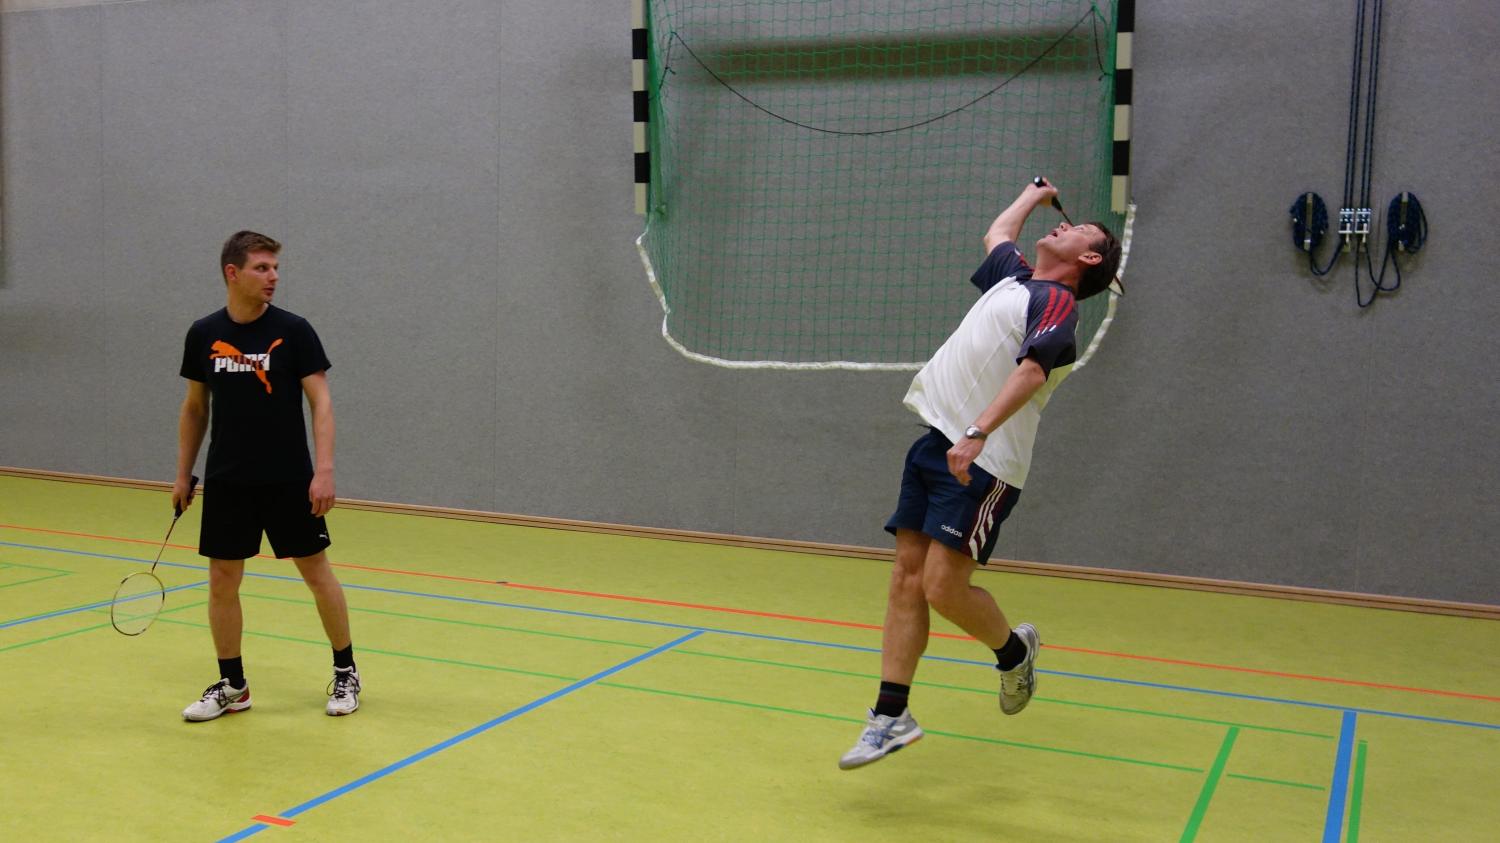 Schnelle, dynamische Aktionen beim Badminton-Training